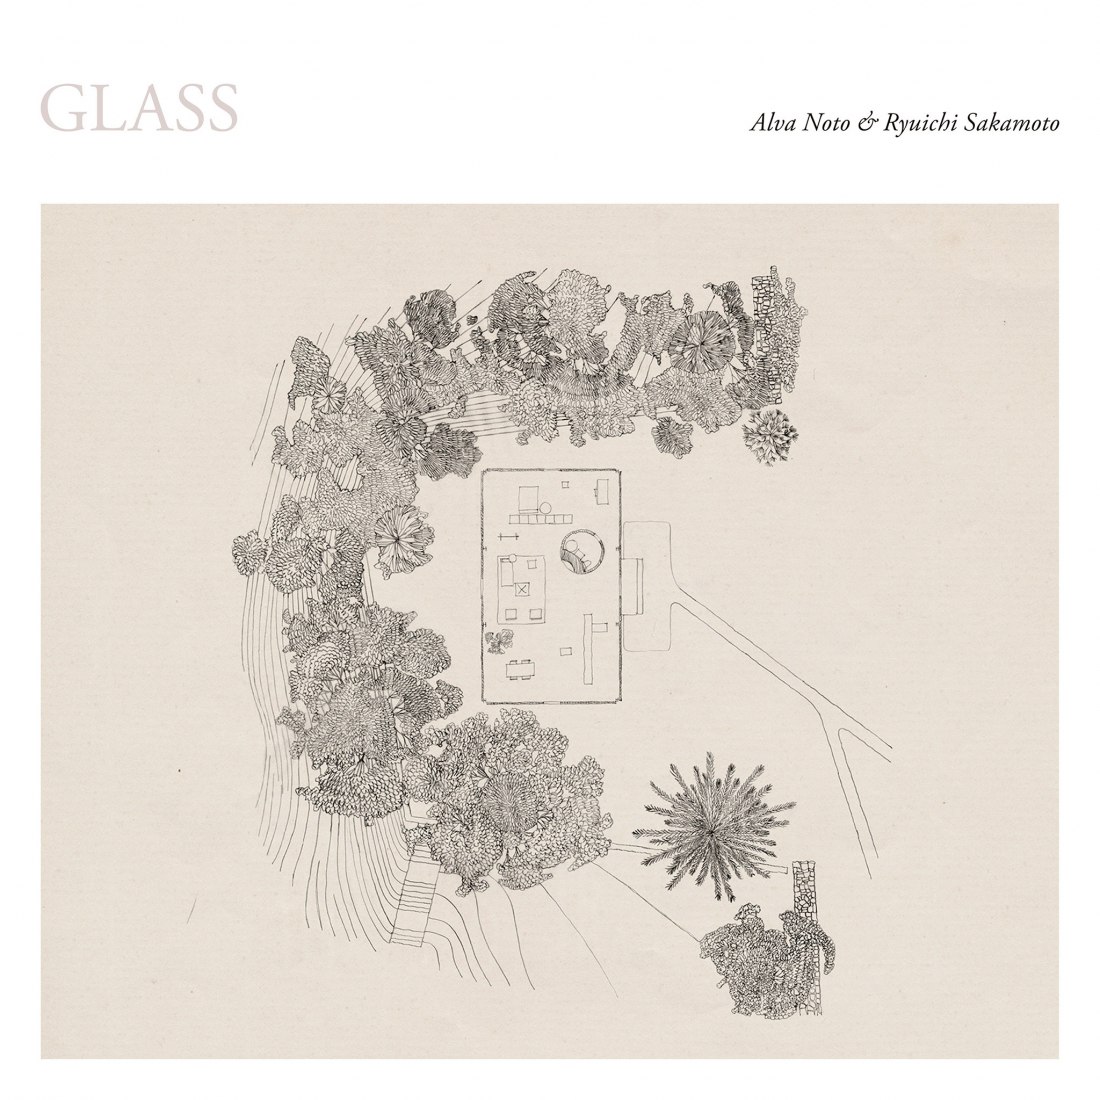 Glass por Alva Noto & Ryuichi Sakamoto